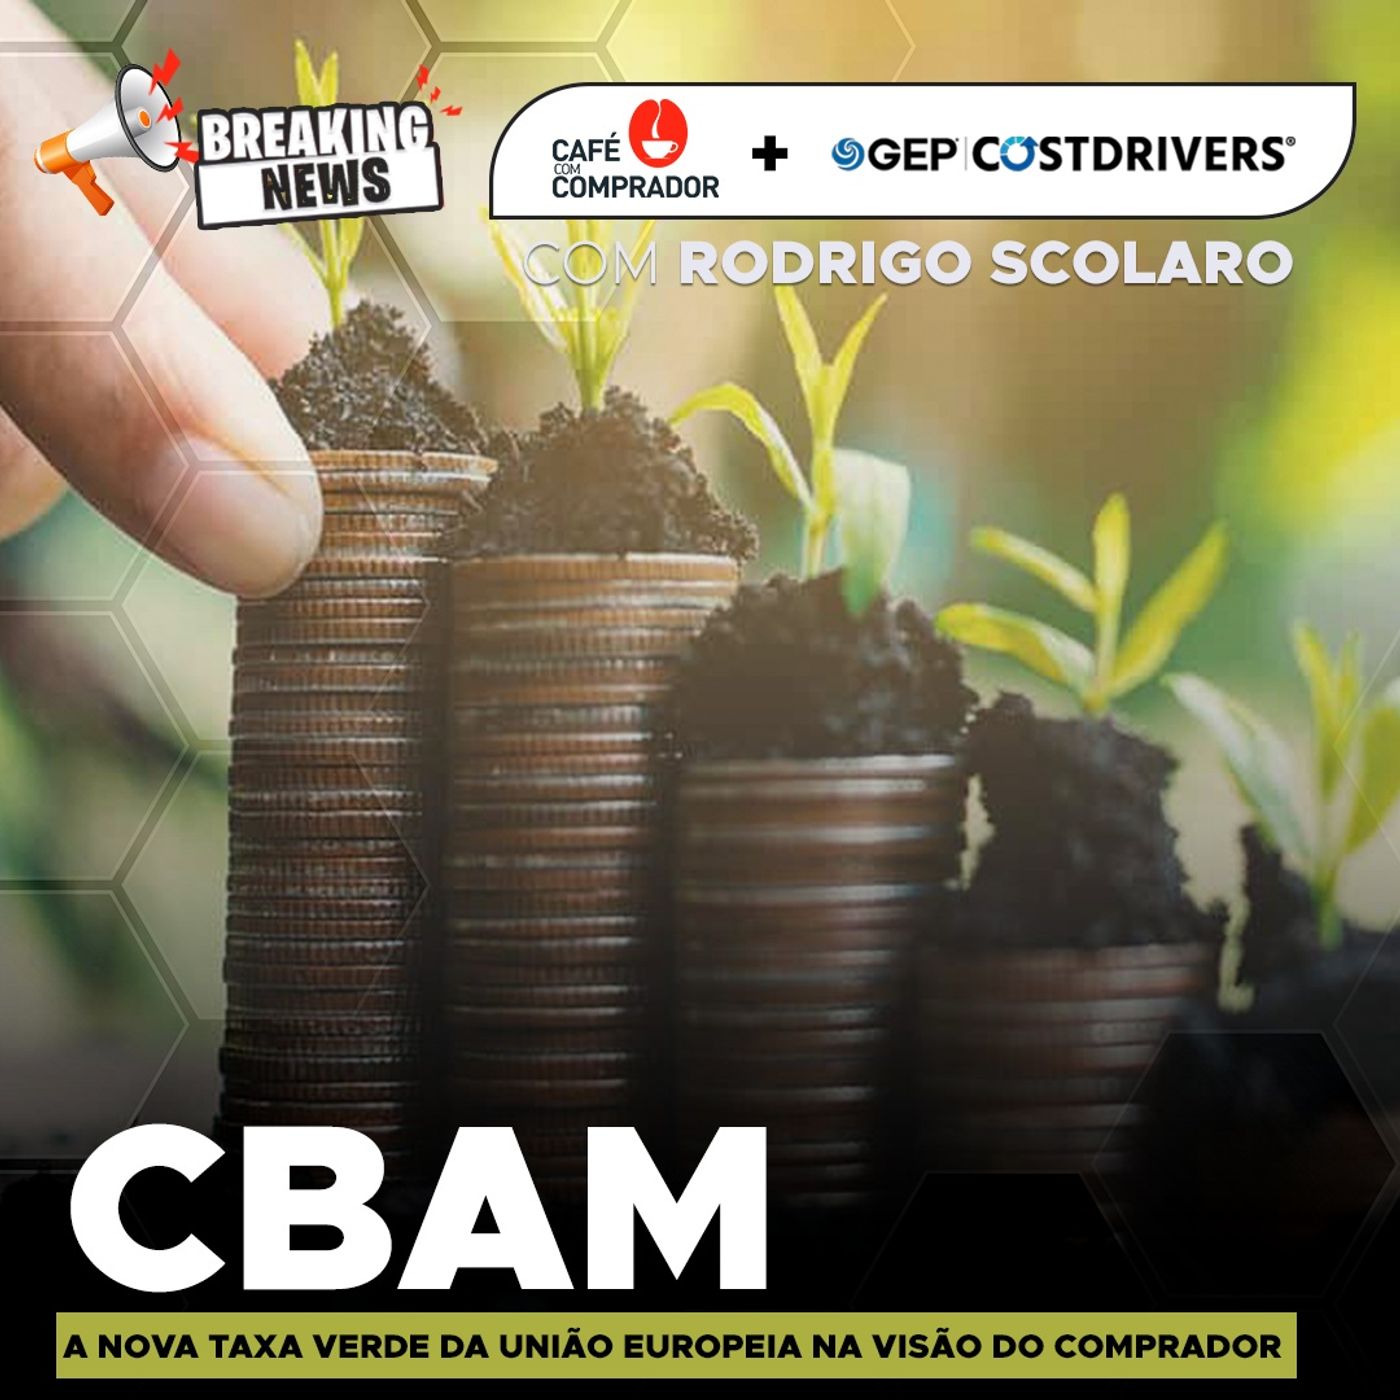 CBAM - A Nova taxa Verde da União Europeia na Visão do Comprador